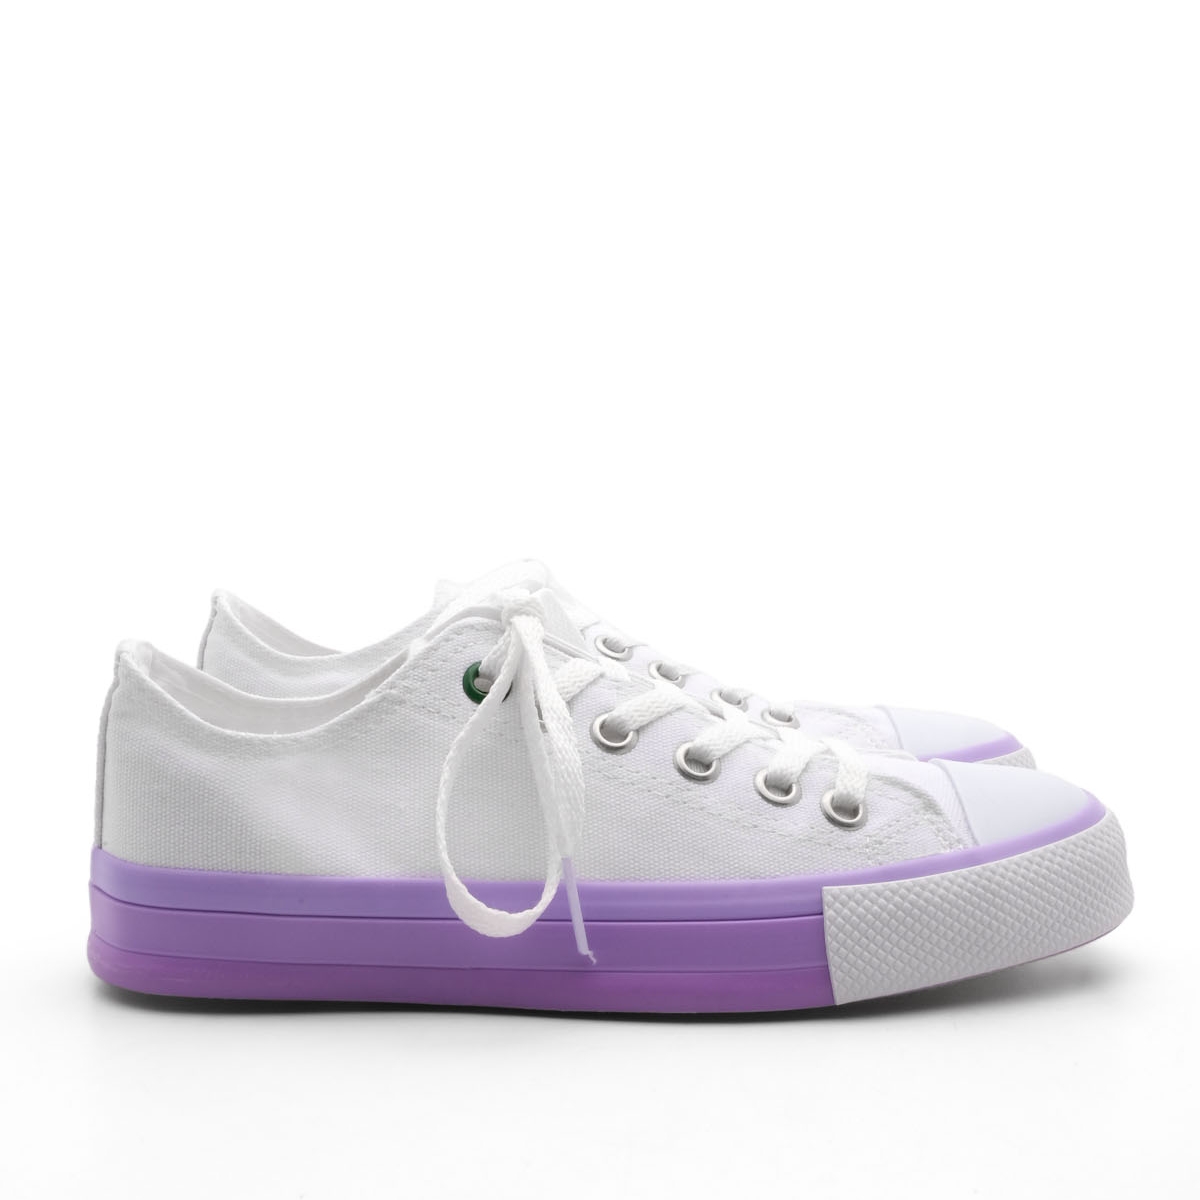 Flo Kadın Sneaker Keten Kumaş Bağcıklı Spor Ayakkabı Hesna Beyaz. 7